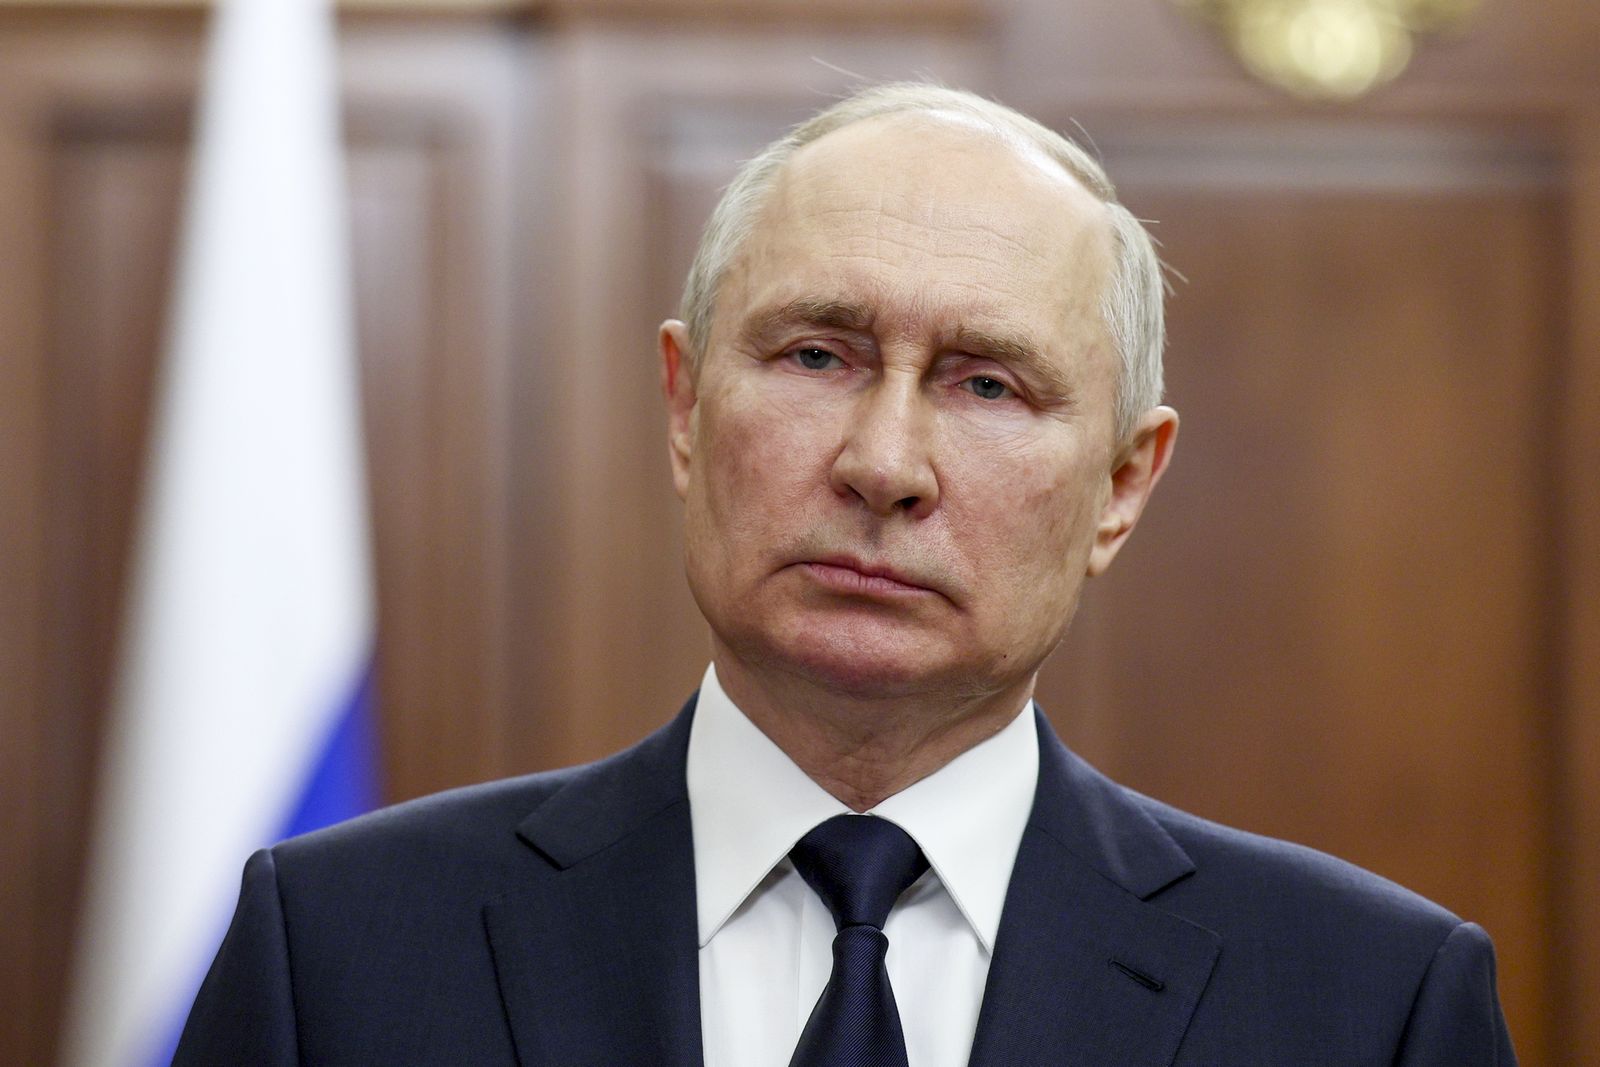 πούτιν: οσοι λένε ότι θα επιτεθούμε σε χώρες του νατο, λένε μπούρδες